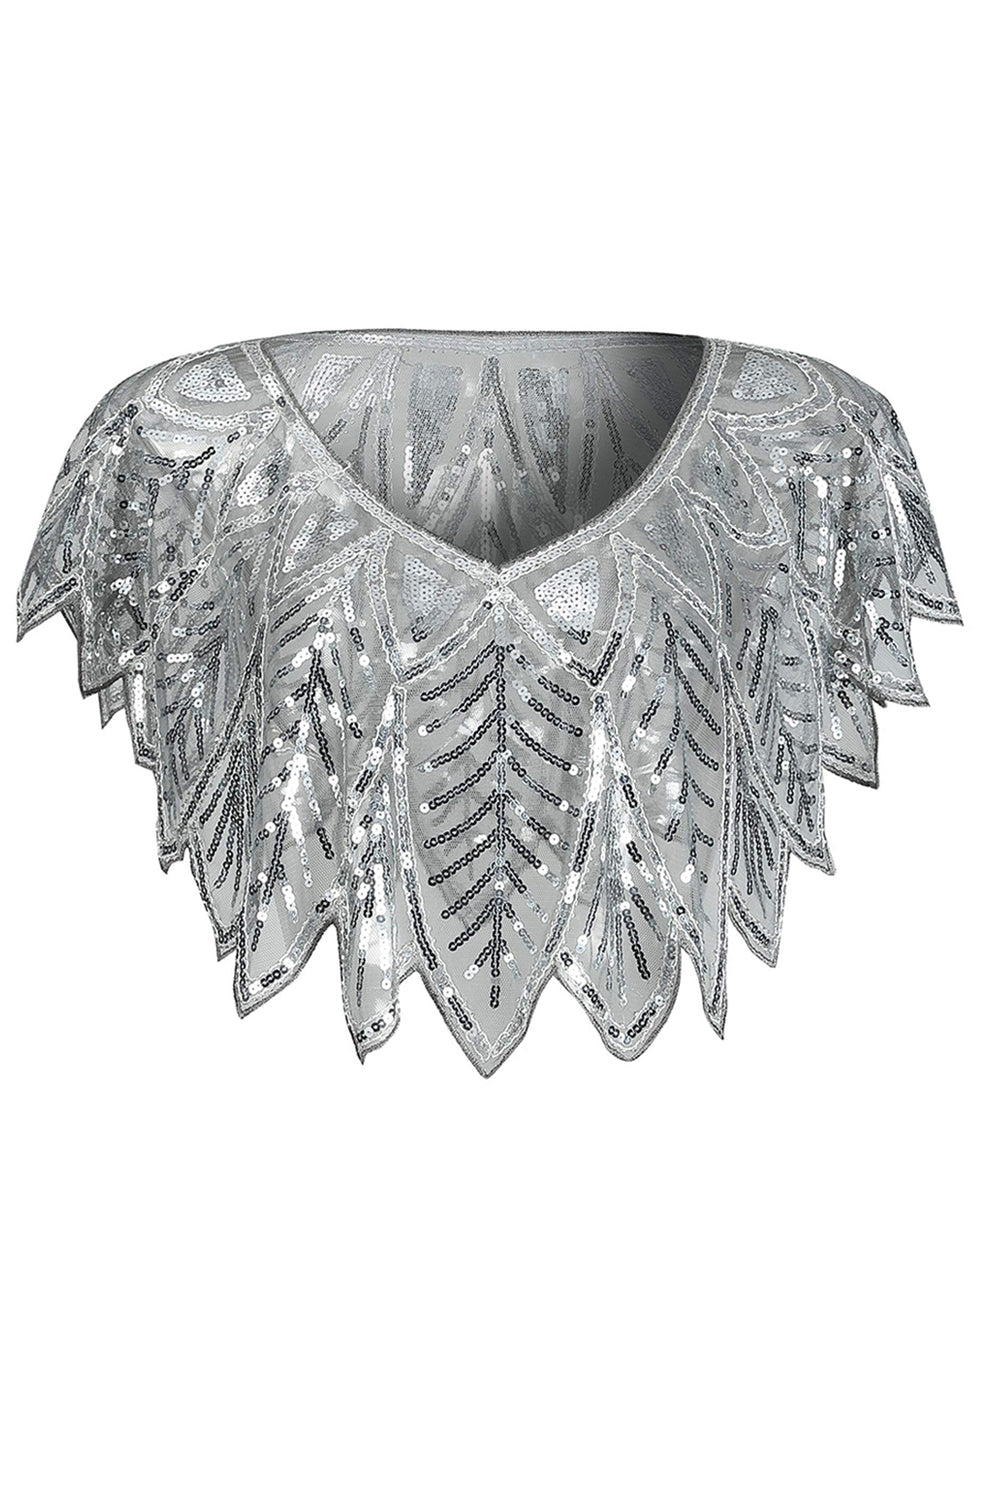 Silver Sequin Glitter 1920s Cape